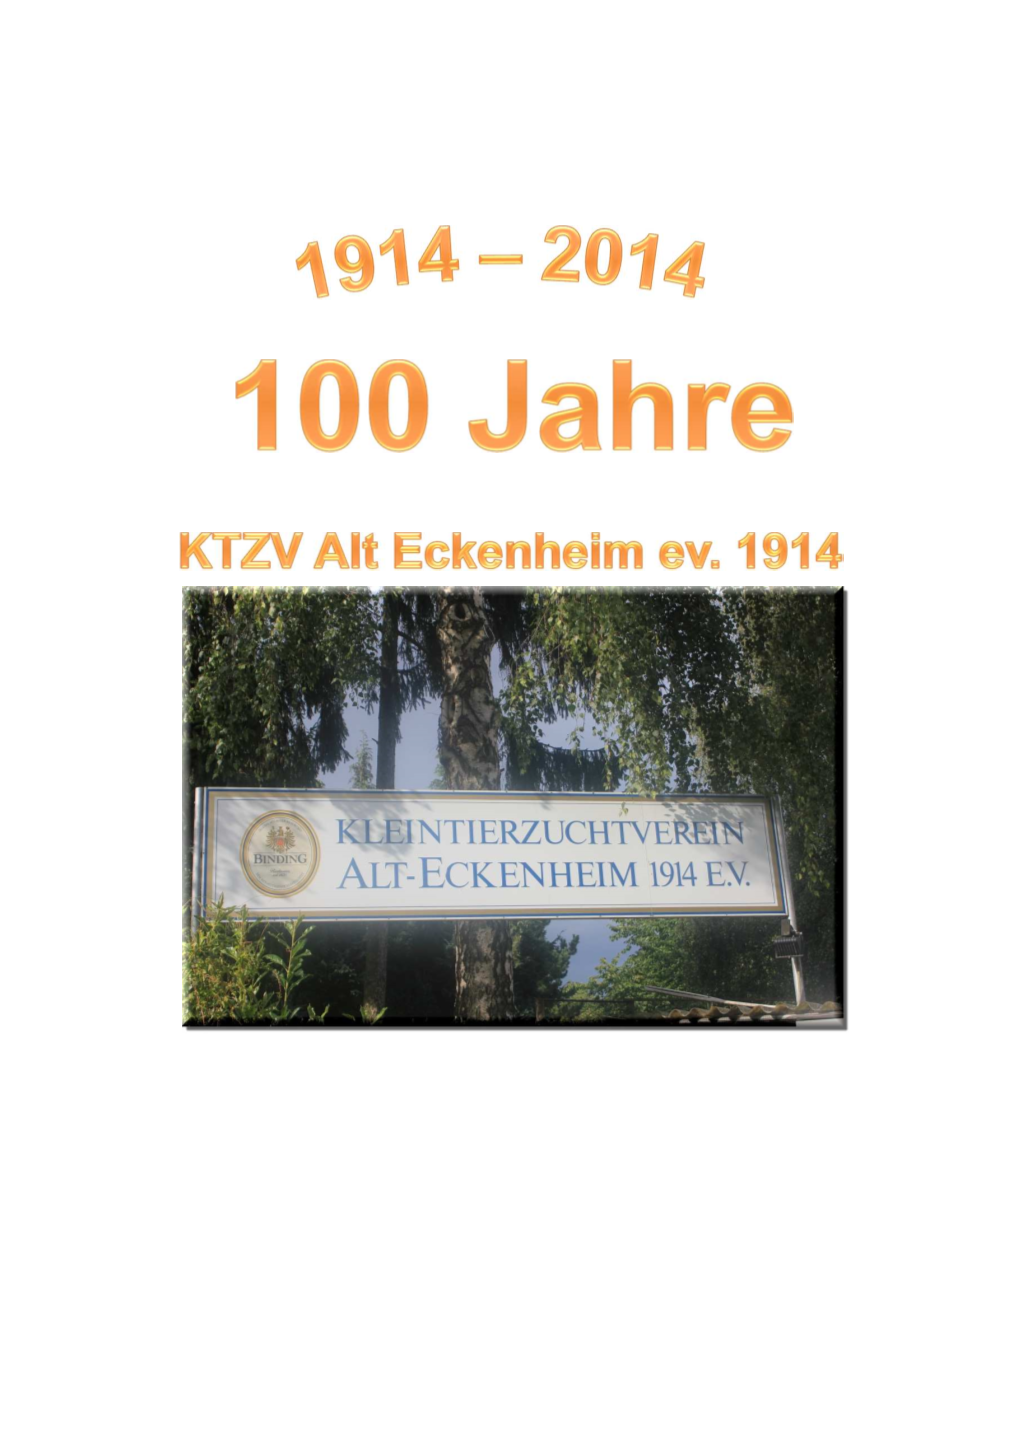 Chronik-Verein KTZV Alt Eckenheim